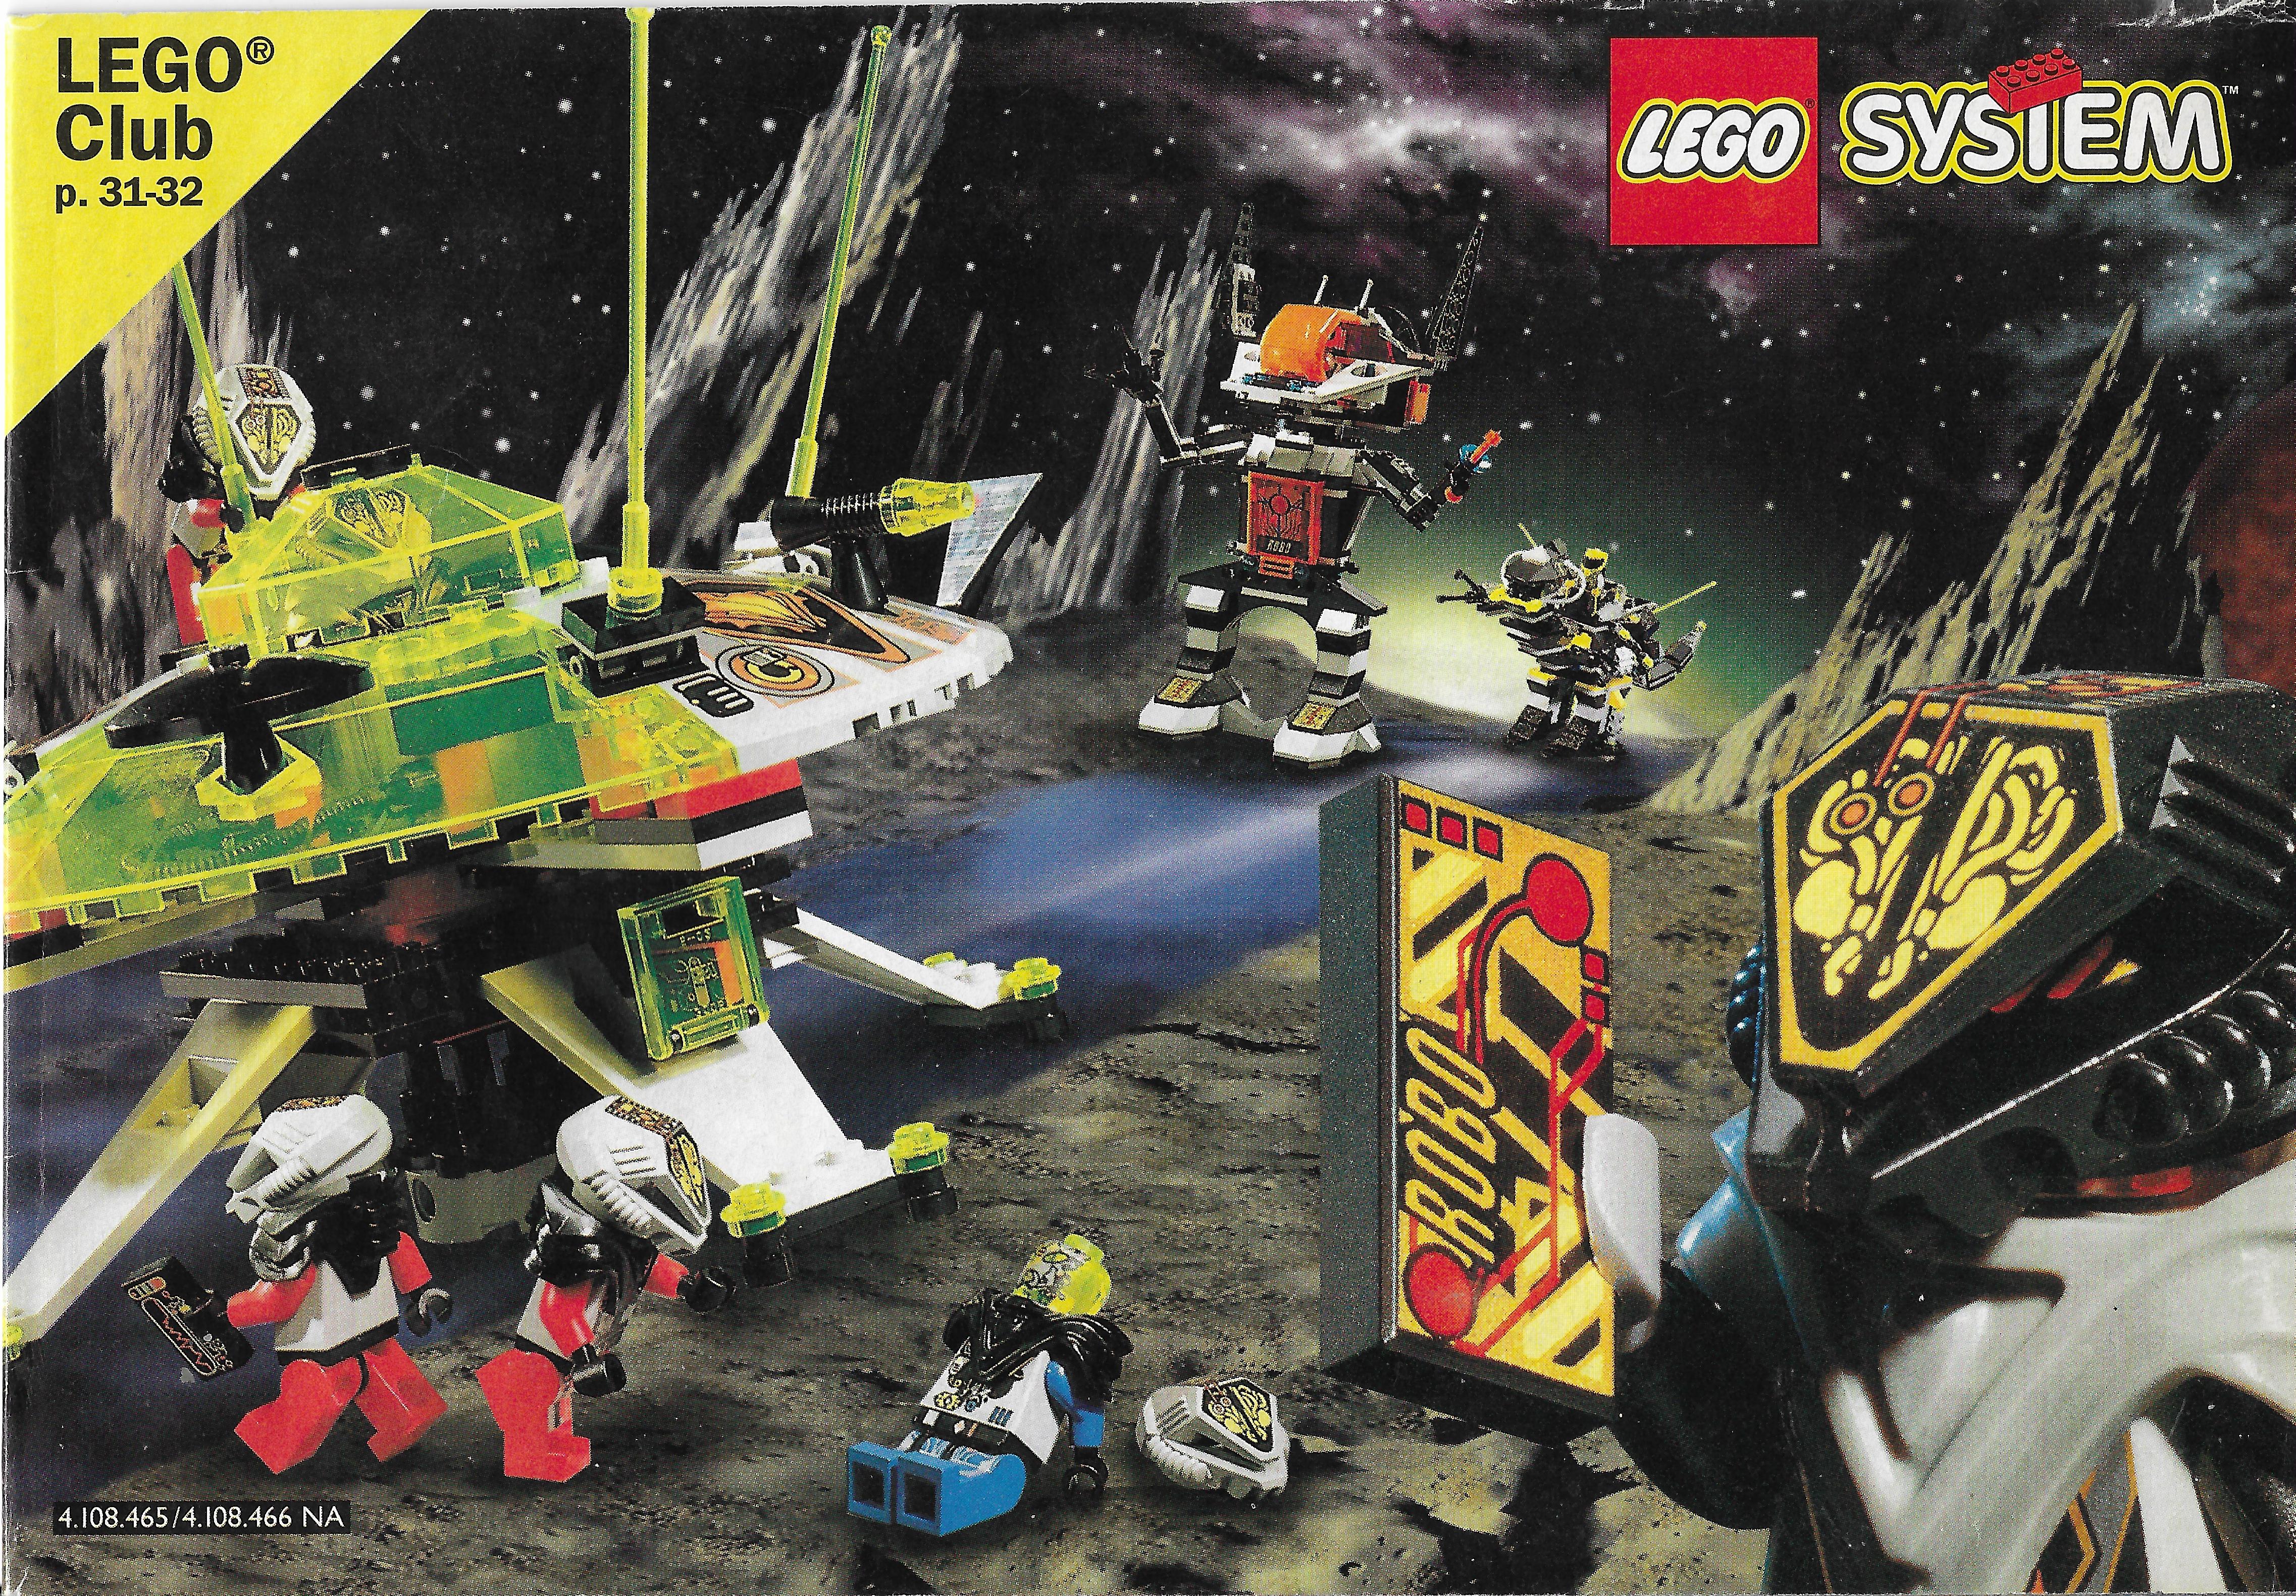 Amerikai Lego katalógus 1997-ből